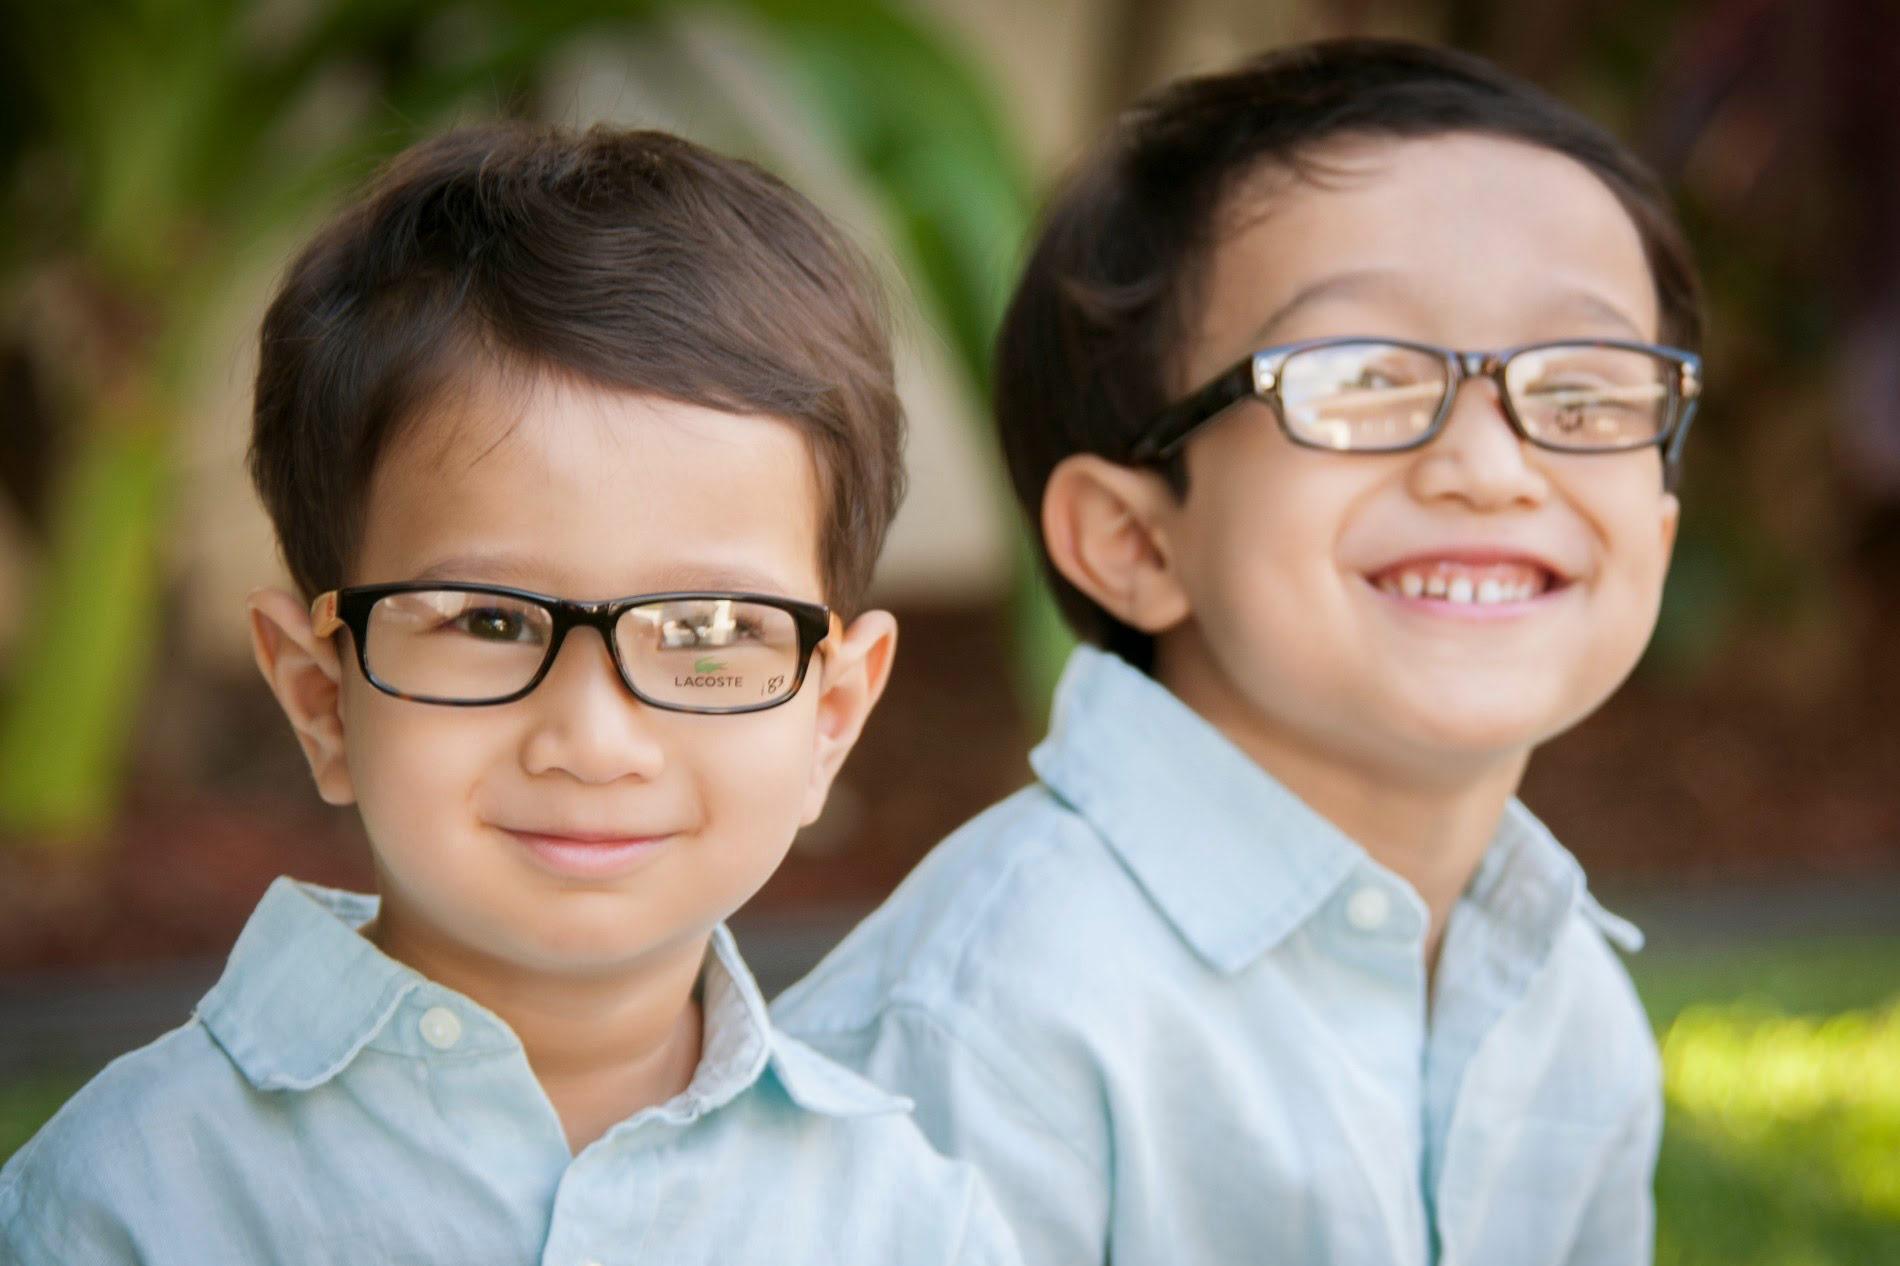 छोटे बच्चों की आंखों पर चढ़ा चश्मा उतारेगा हैलट